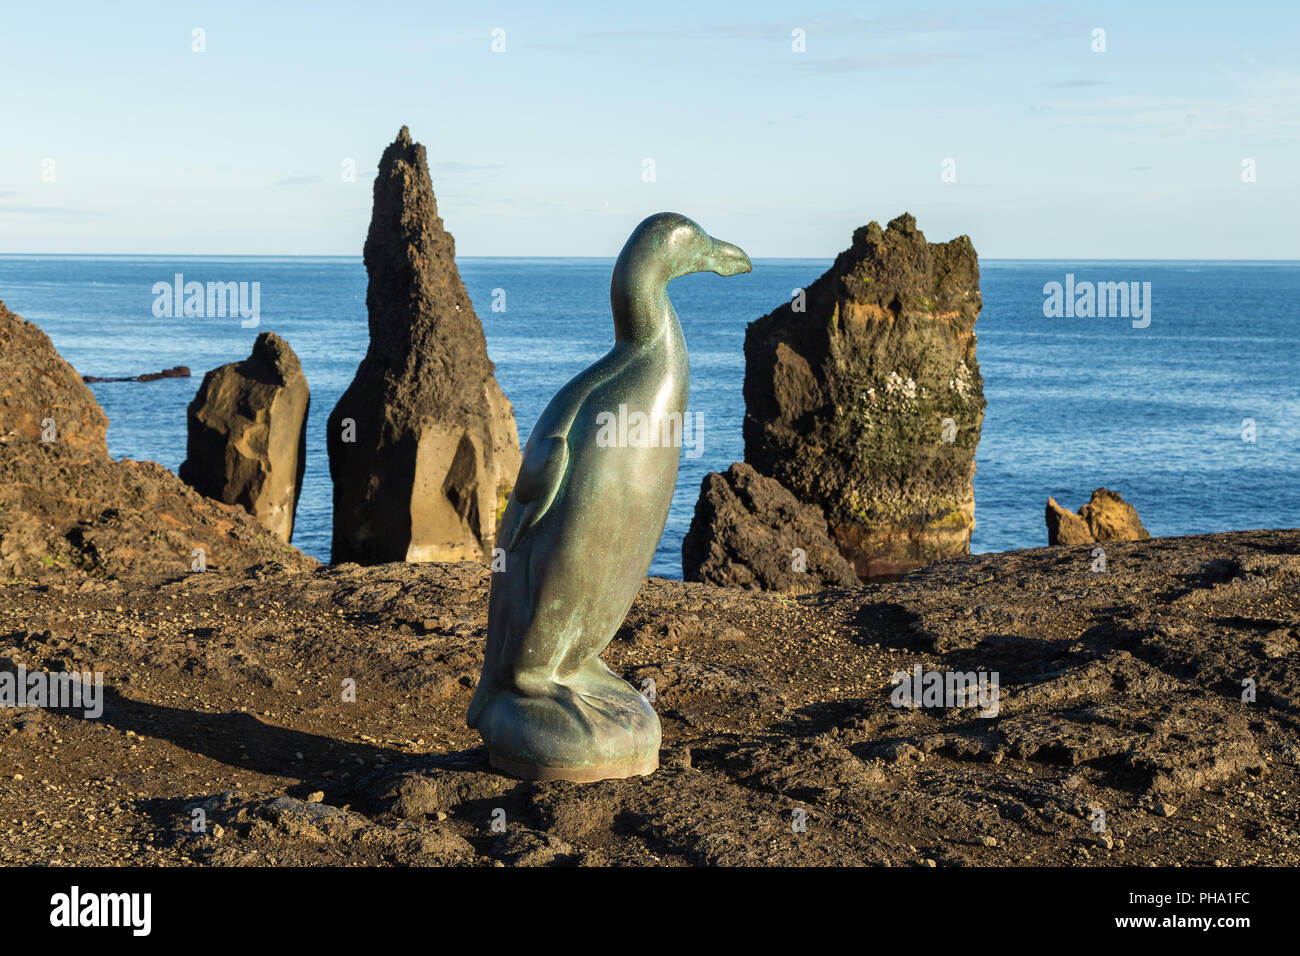 Pinguinus impennis dans la partie sud de l'Islande Banque D'Images